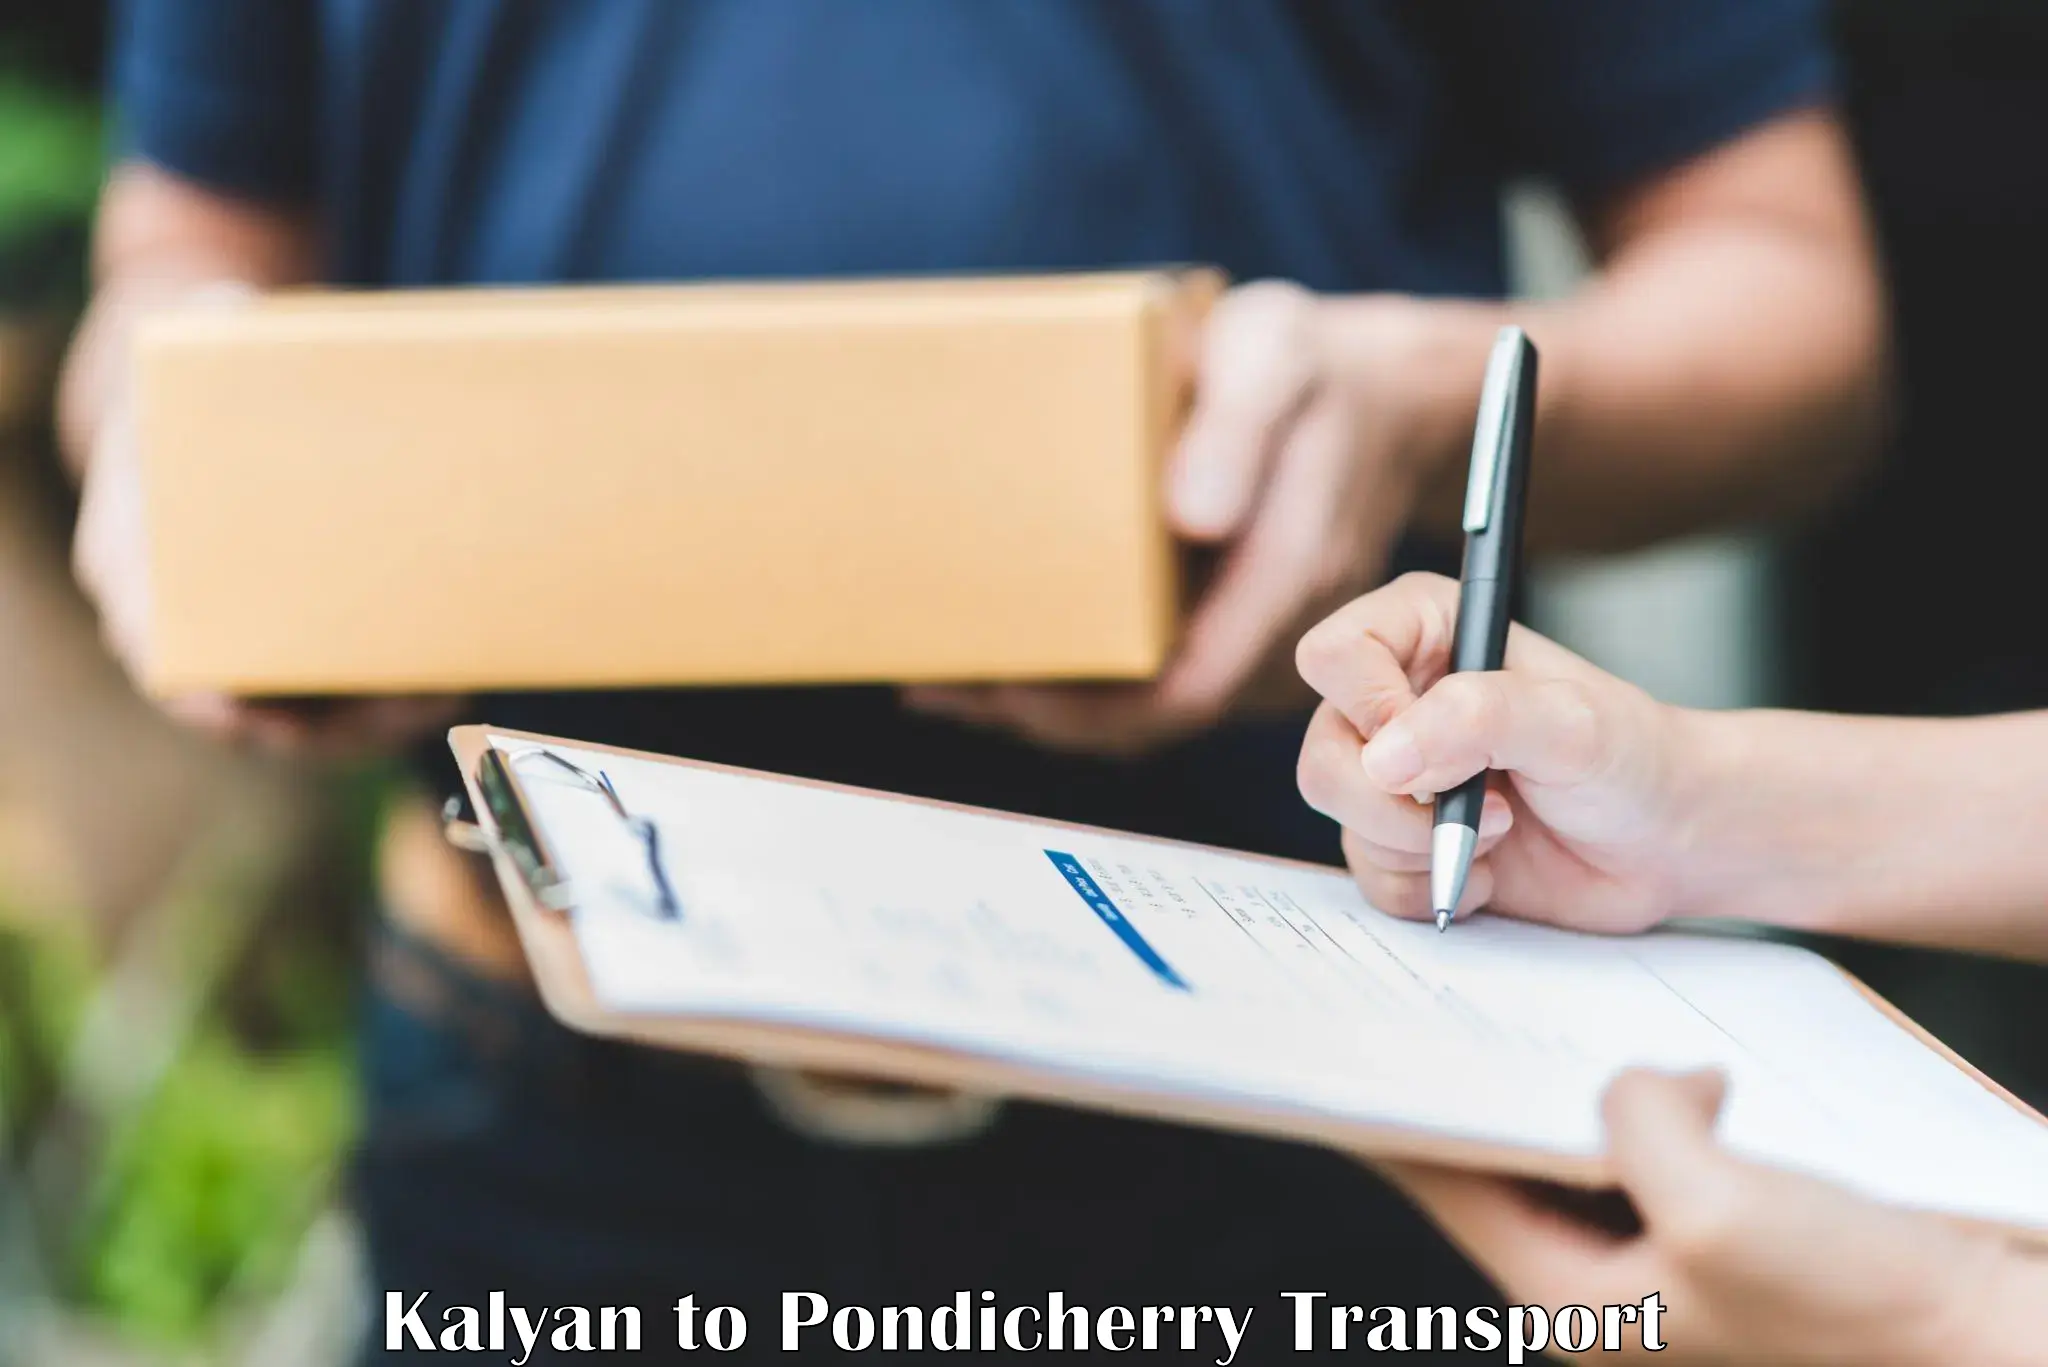 Daily parcel service transport Kalyan to Pondicherry University